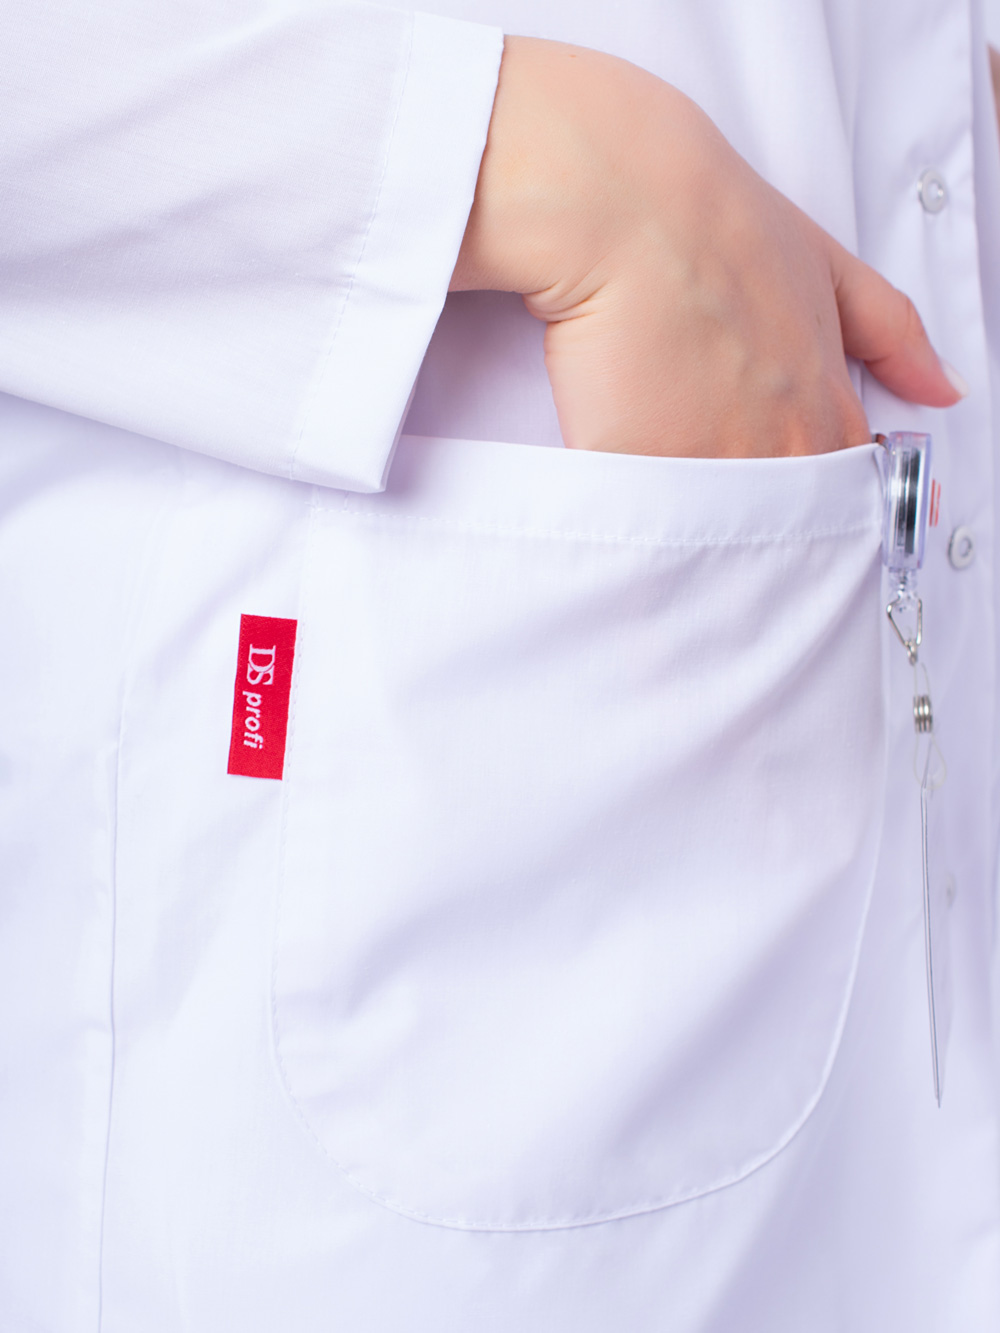 Медицинский халат женский Реалити, белый (серия Профи) – выгодные цена в  Москве, купить в интернет-магазине Doctor Style